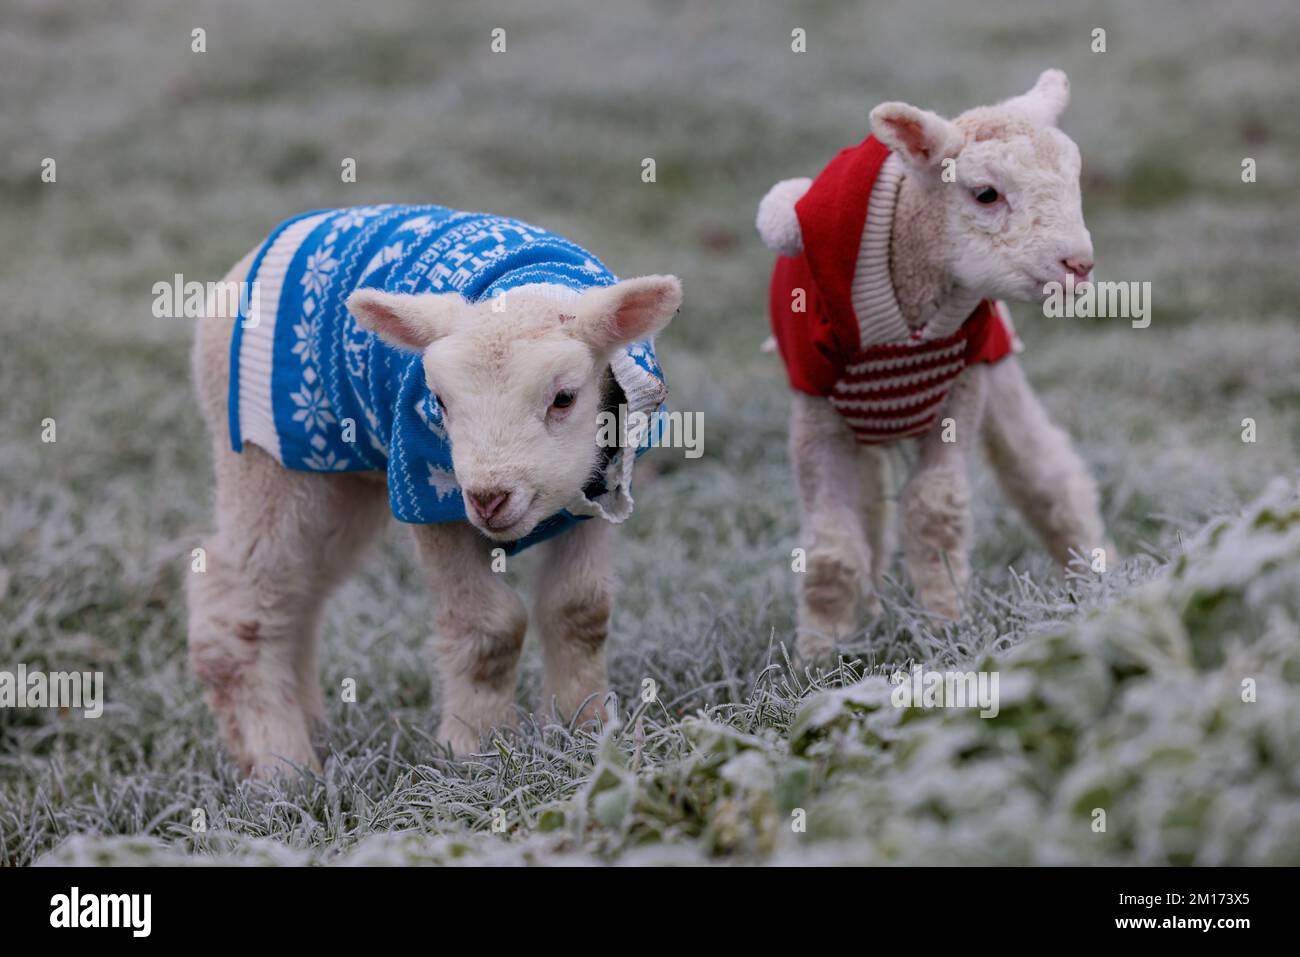 Bocketts Farm in Surrey hanno dato i loro piccoli agnelli Jumpers di Natale per mantenere caldo mentre il freddo e il freddo tempo gelido polverato il ‘Troll of Trondheim’ continua a colpire il Regno Unito. La fattoria si aspetta un certo numero di agnelli questo inverno con il primo essere nato questa settimana. Foto Stock